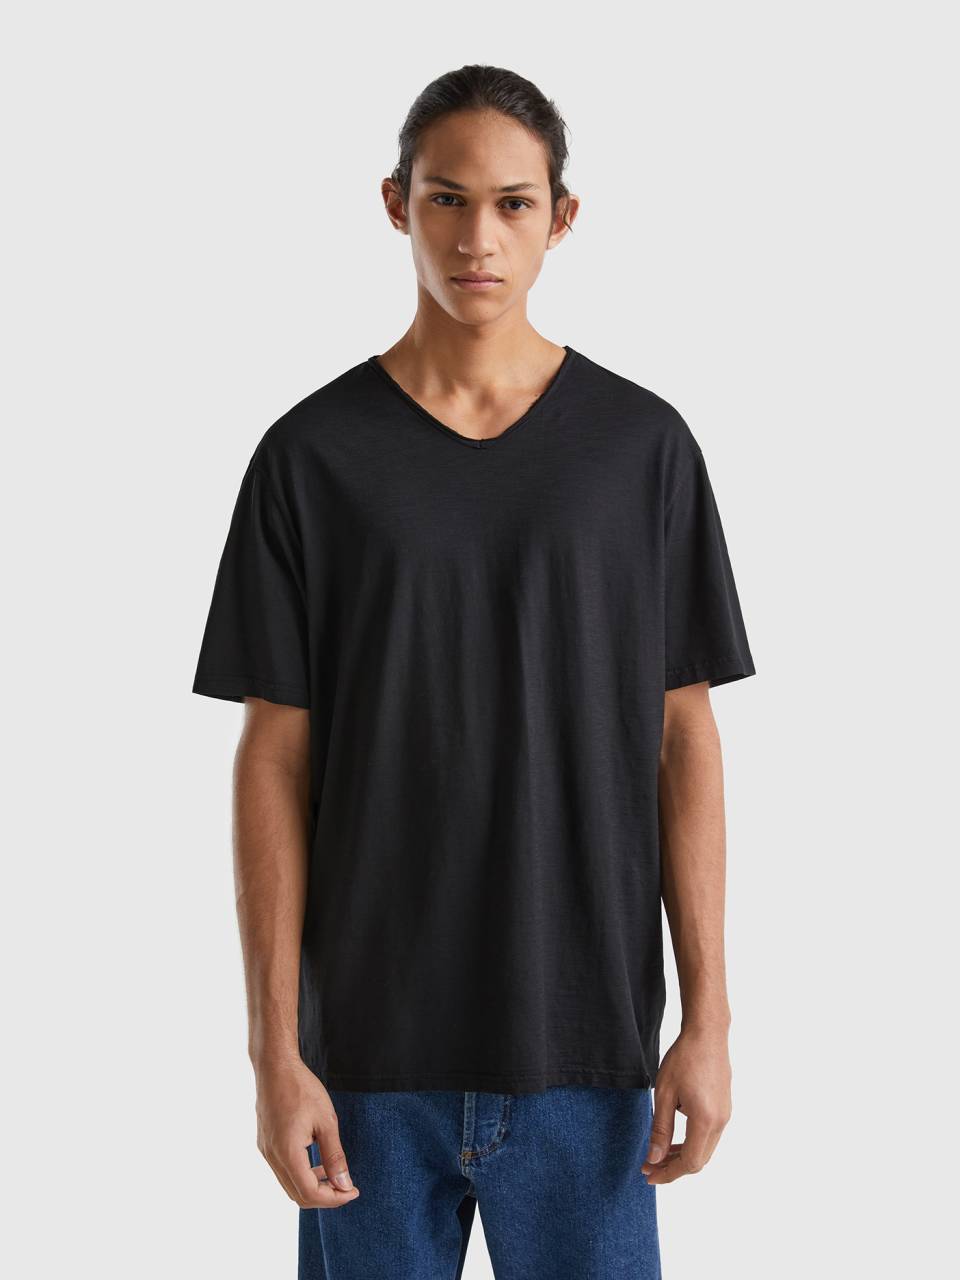 t-shirt V-neck cotton 100% - Benetton Black | in